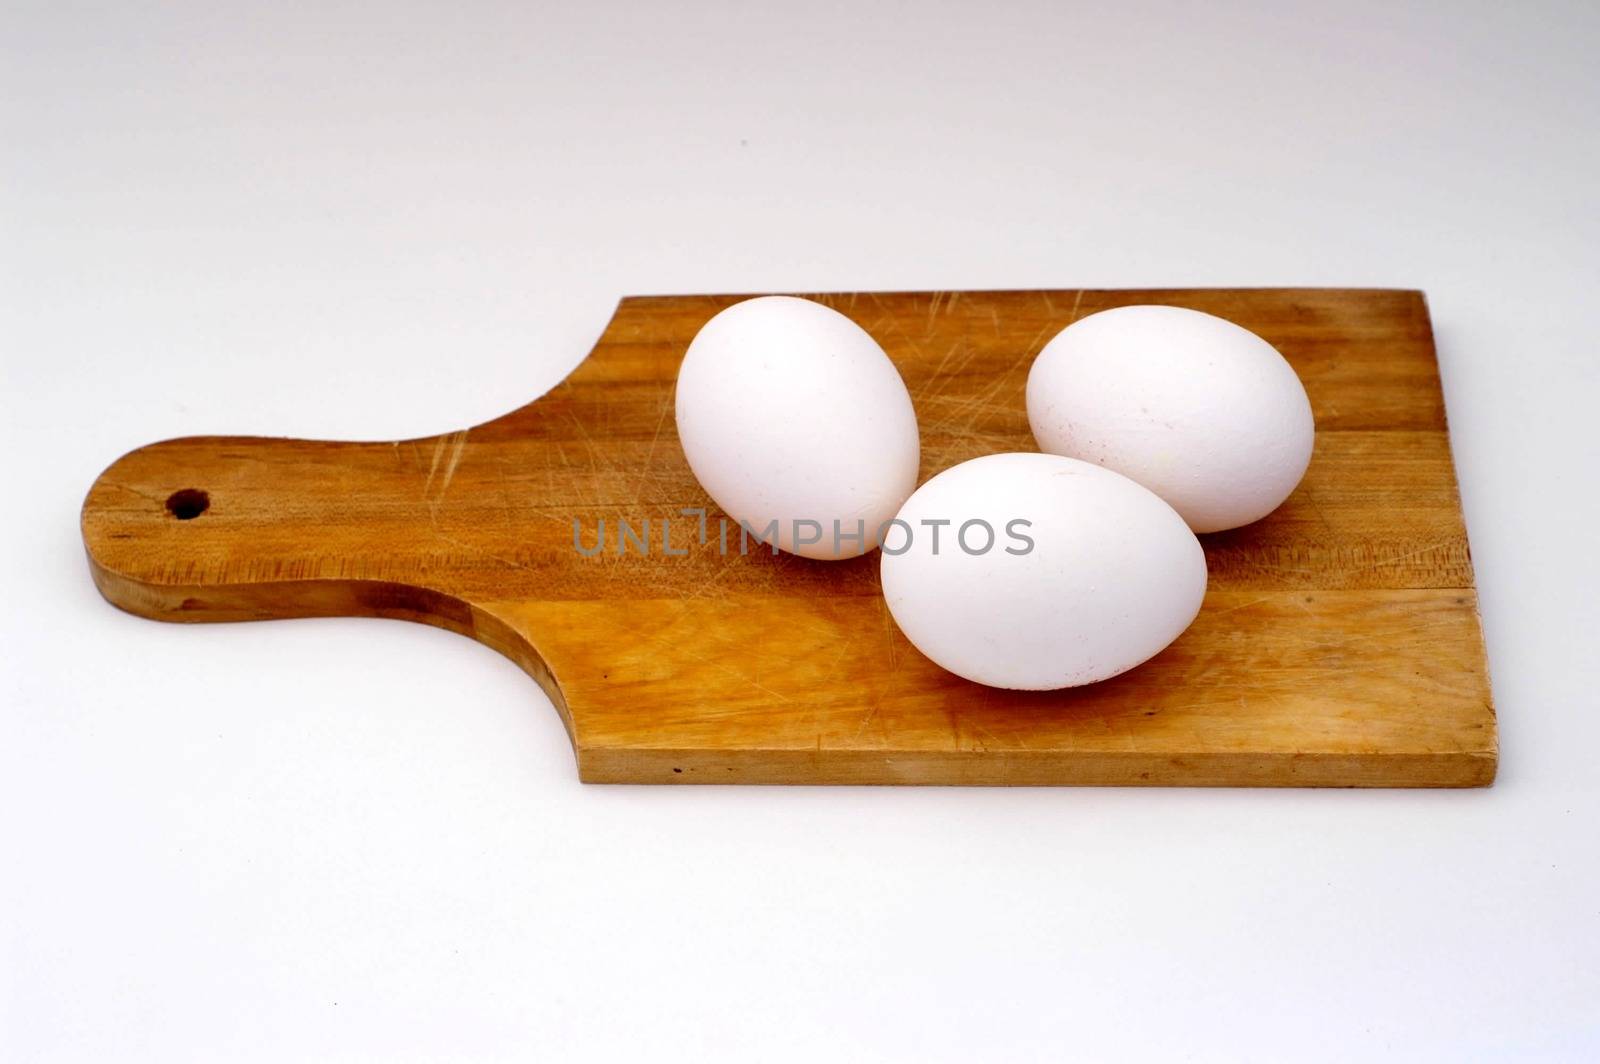 Eggs by javax